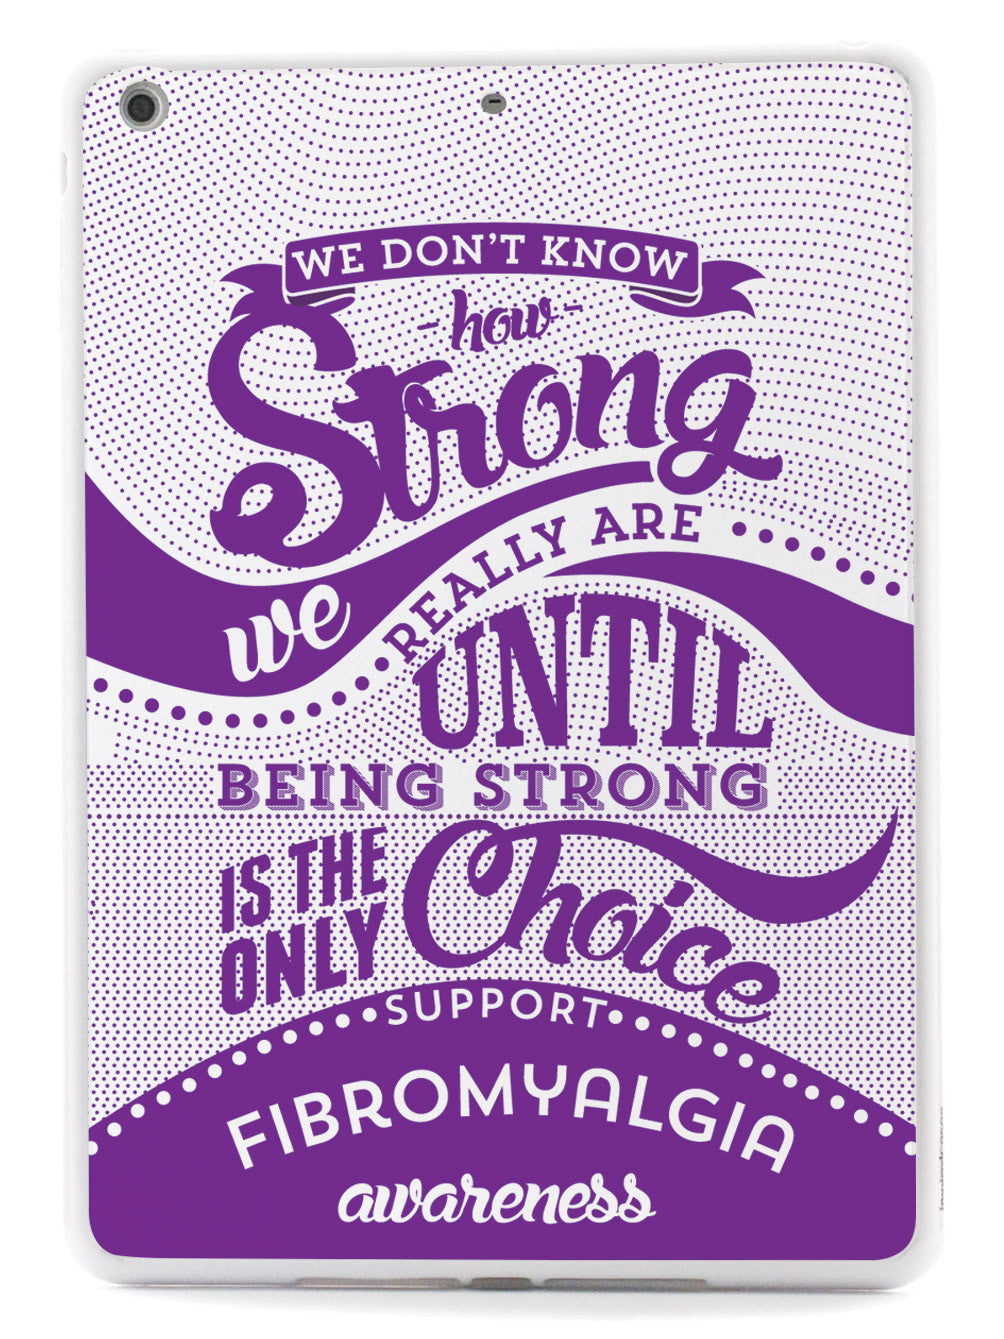 How Strong - Fibromyalgia Awareness Case